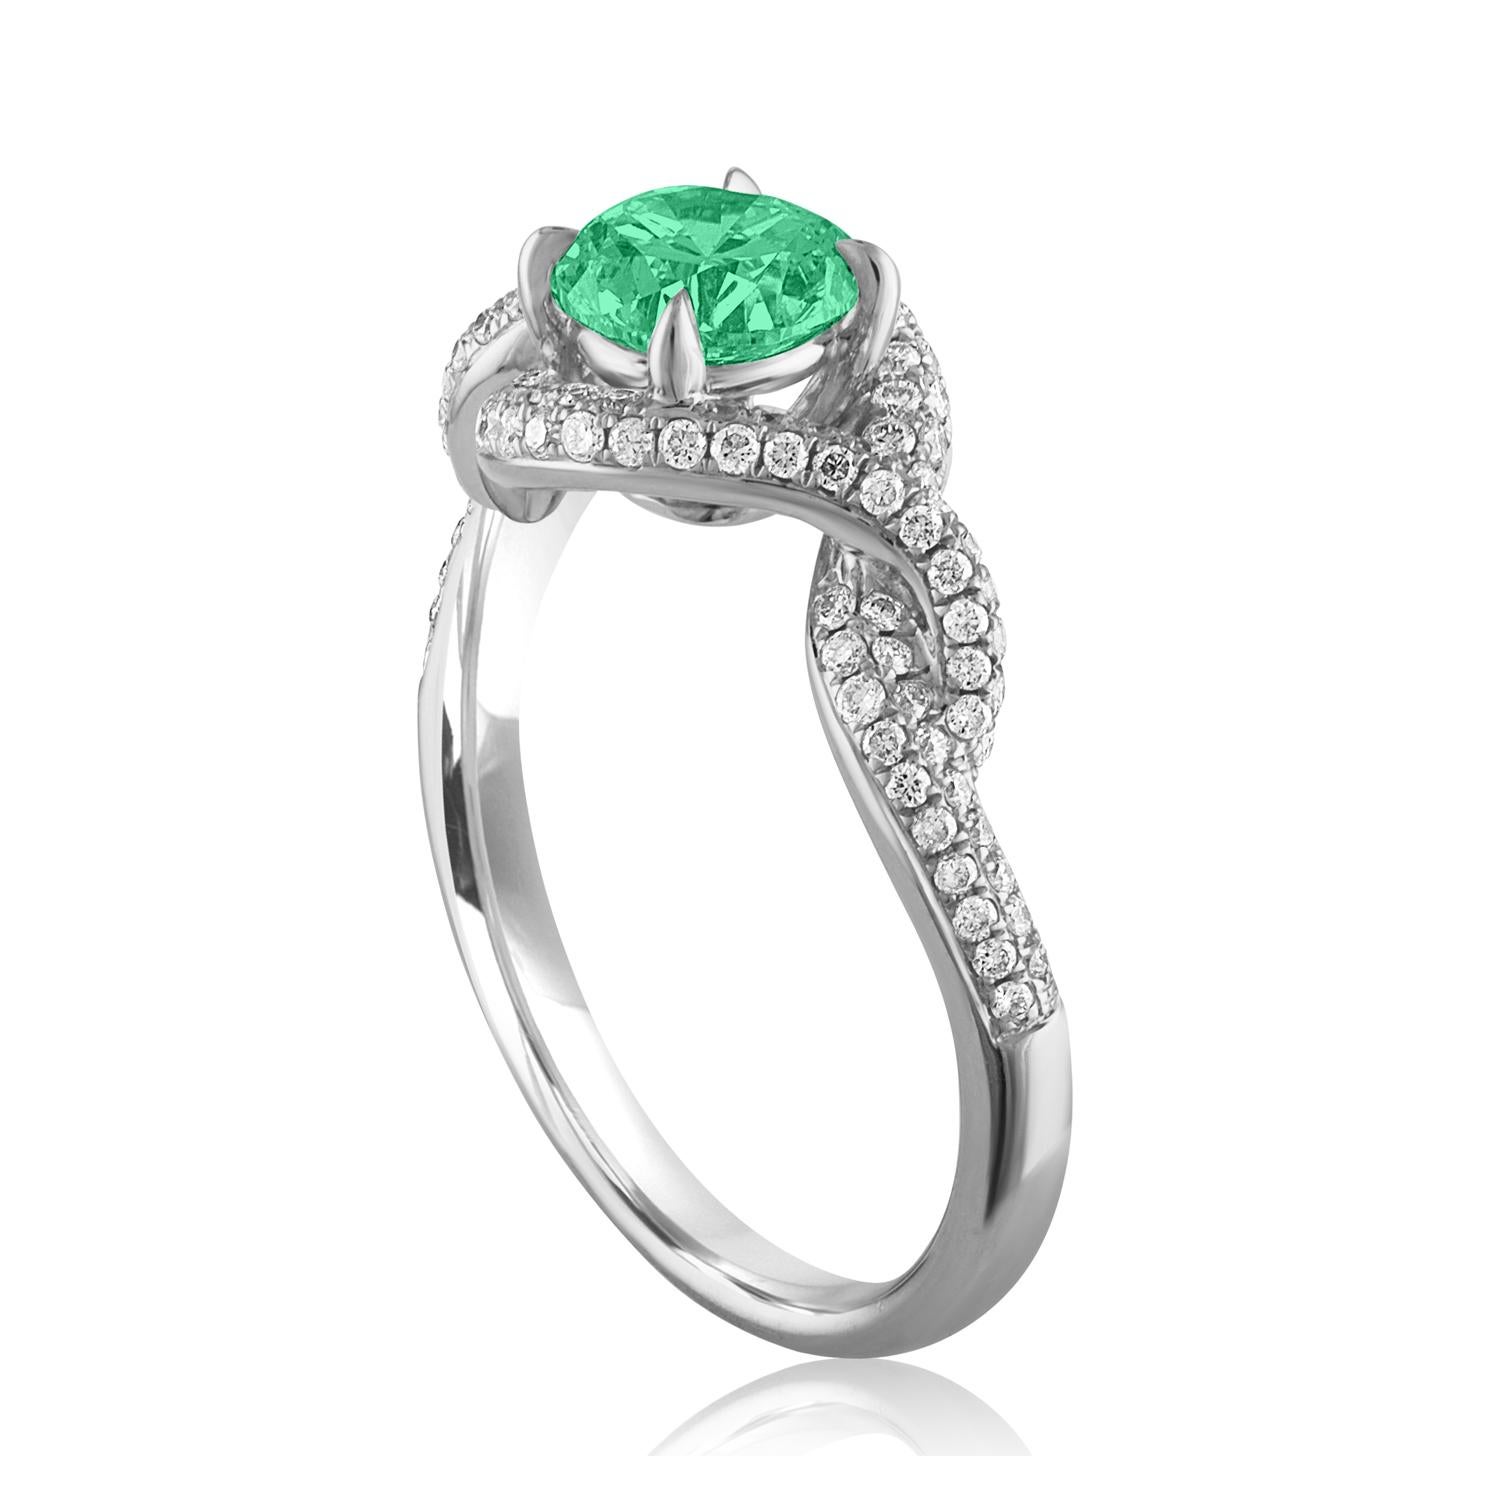 Schöner Twist Shank Smaragd Ring
Der Ring ist aus 18 Karat Weißgold.
Es sind 0.40 Karat in Diamanten F/G VS/SI
Das Zentrum ist rund 0.67 Karat Smaragd.
Der Smaragd ist AGL-zertifiziert.
Der Ring ist eine Größe 6.75, sizable.
Der Ring wiegt 3.8 Gramm.